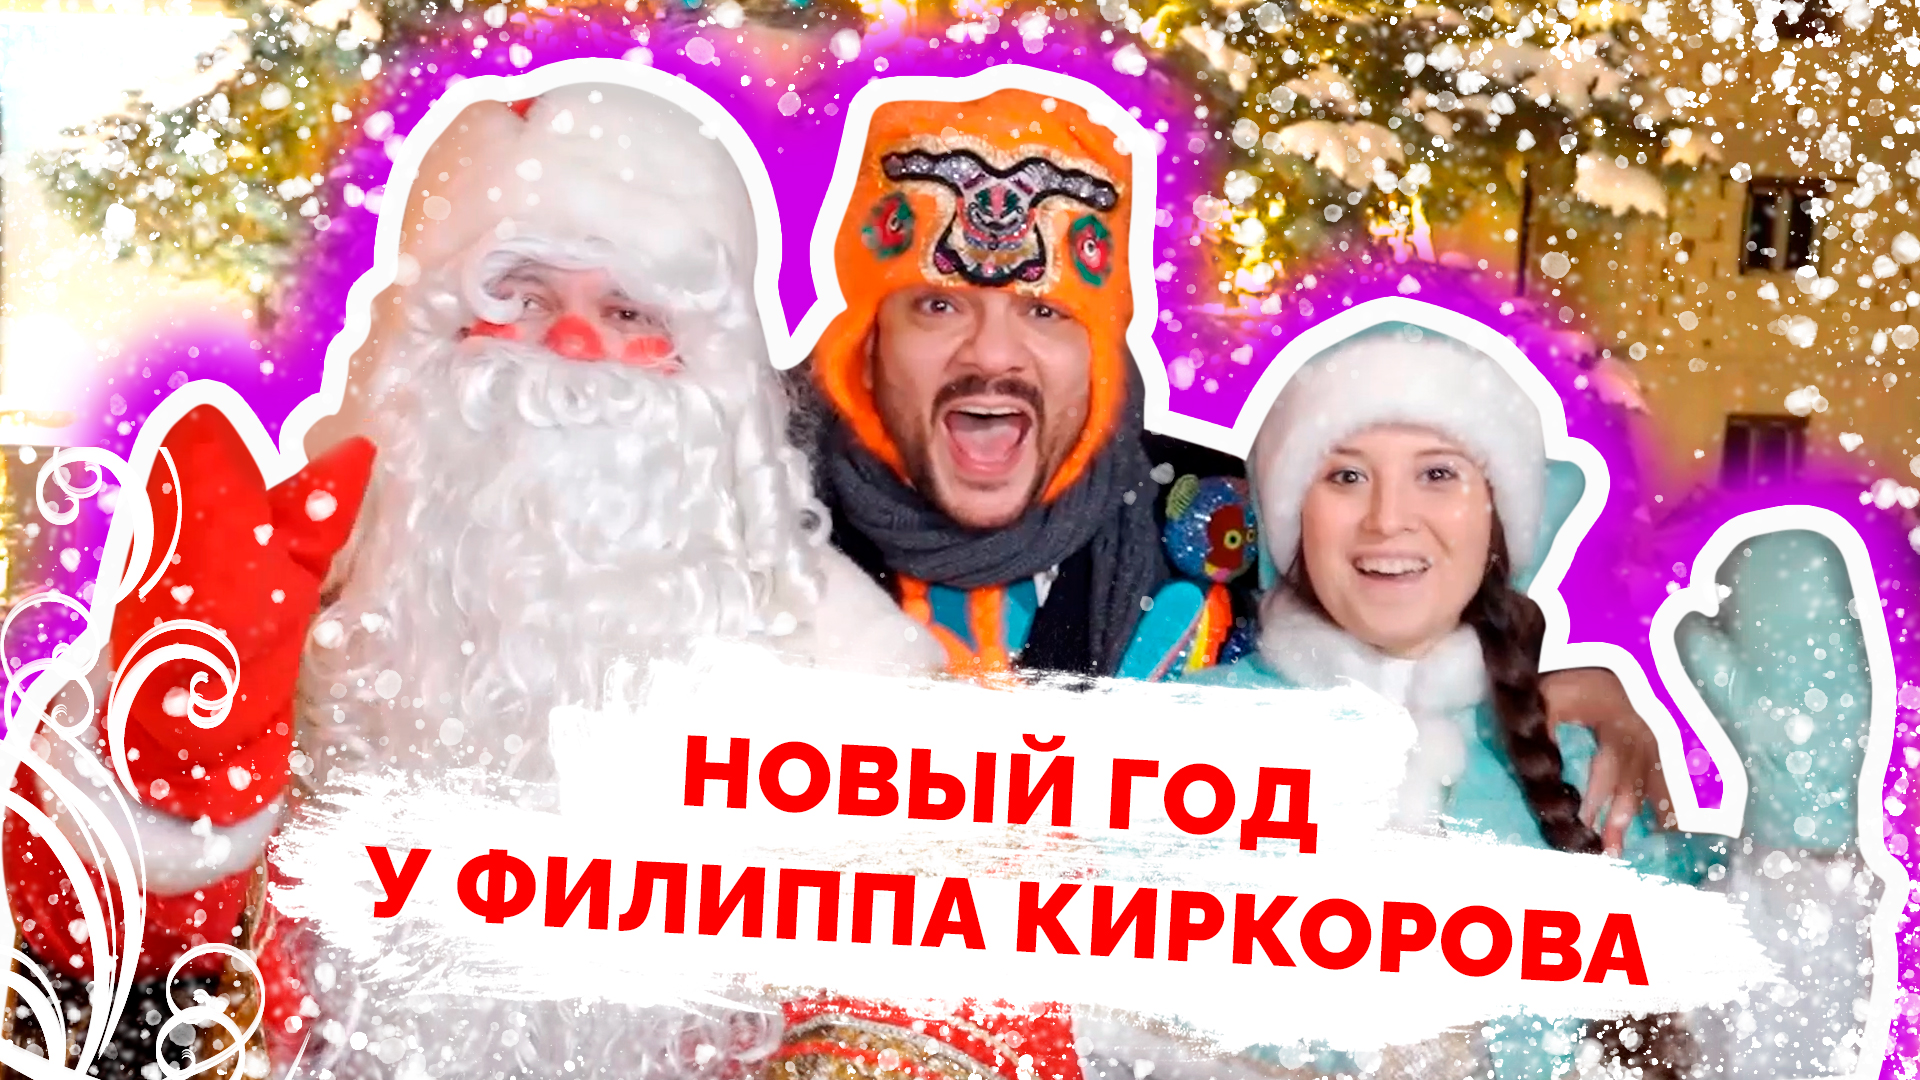 Выступление VIP Деда Мороза и Снегурочки в коттедже